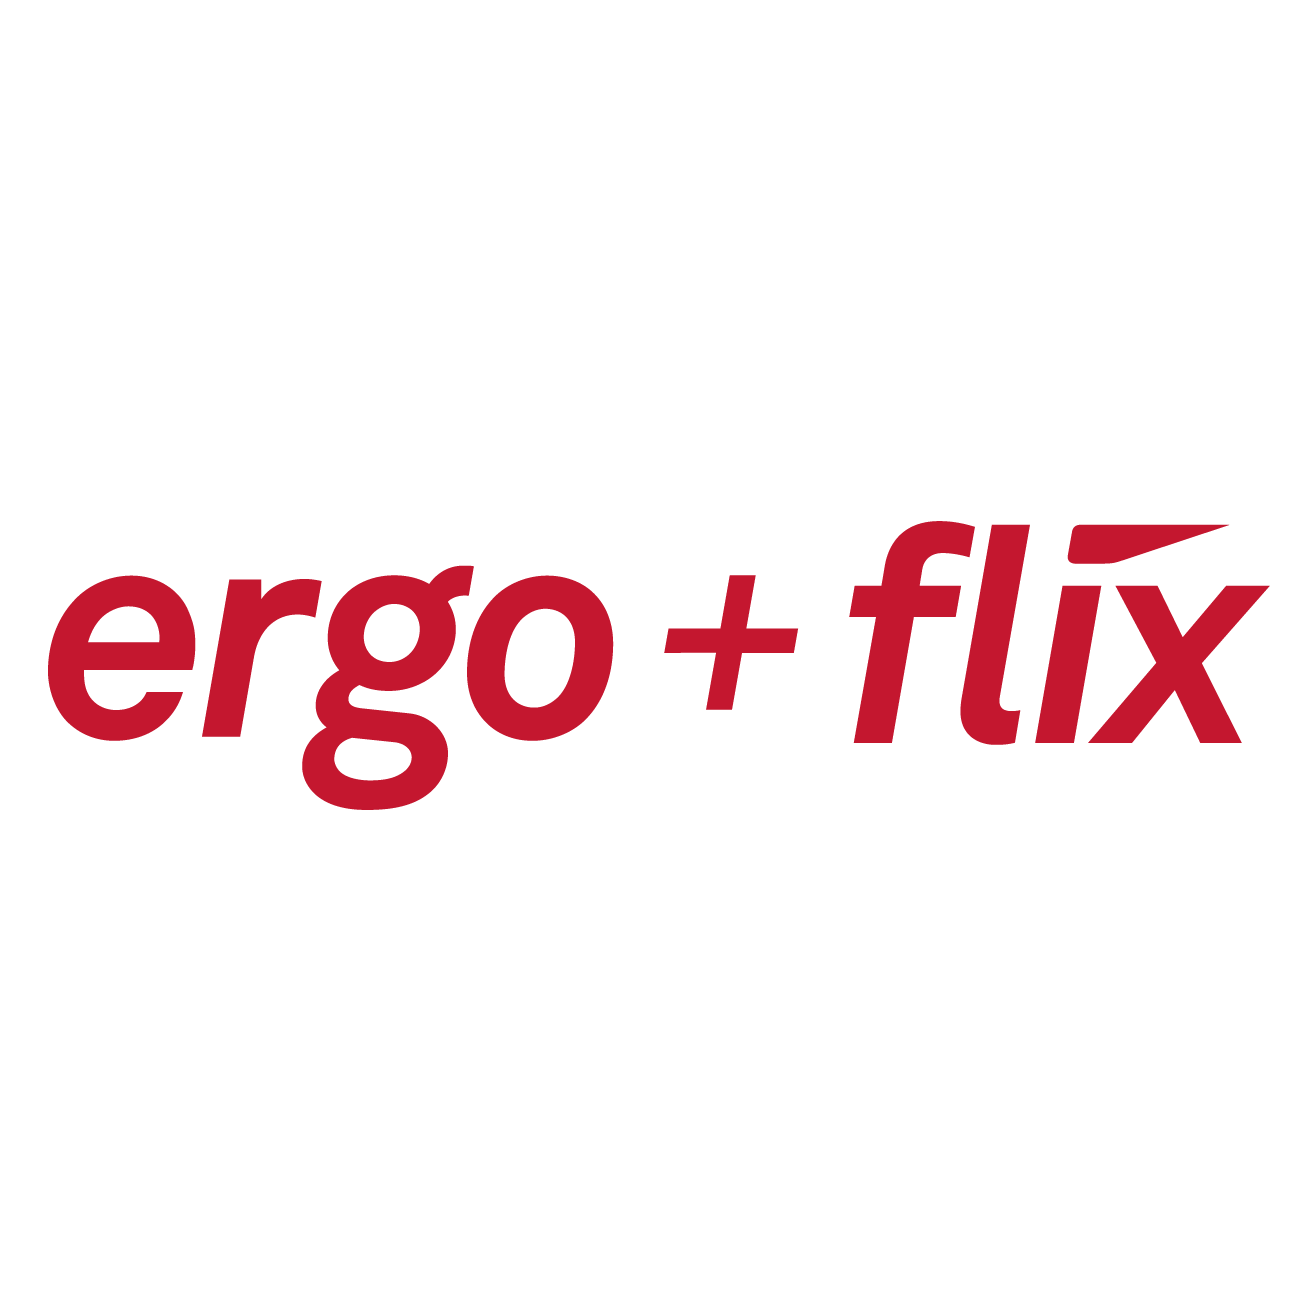 Vector Icon ergo+flix Slogan 